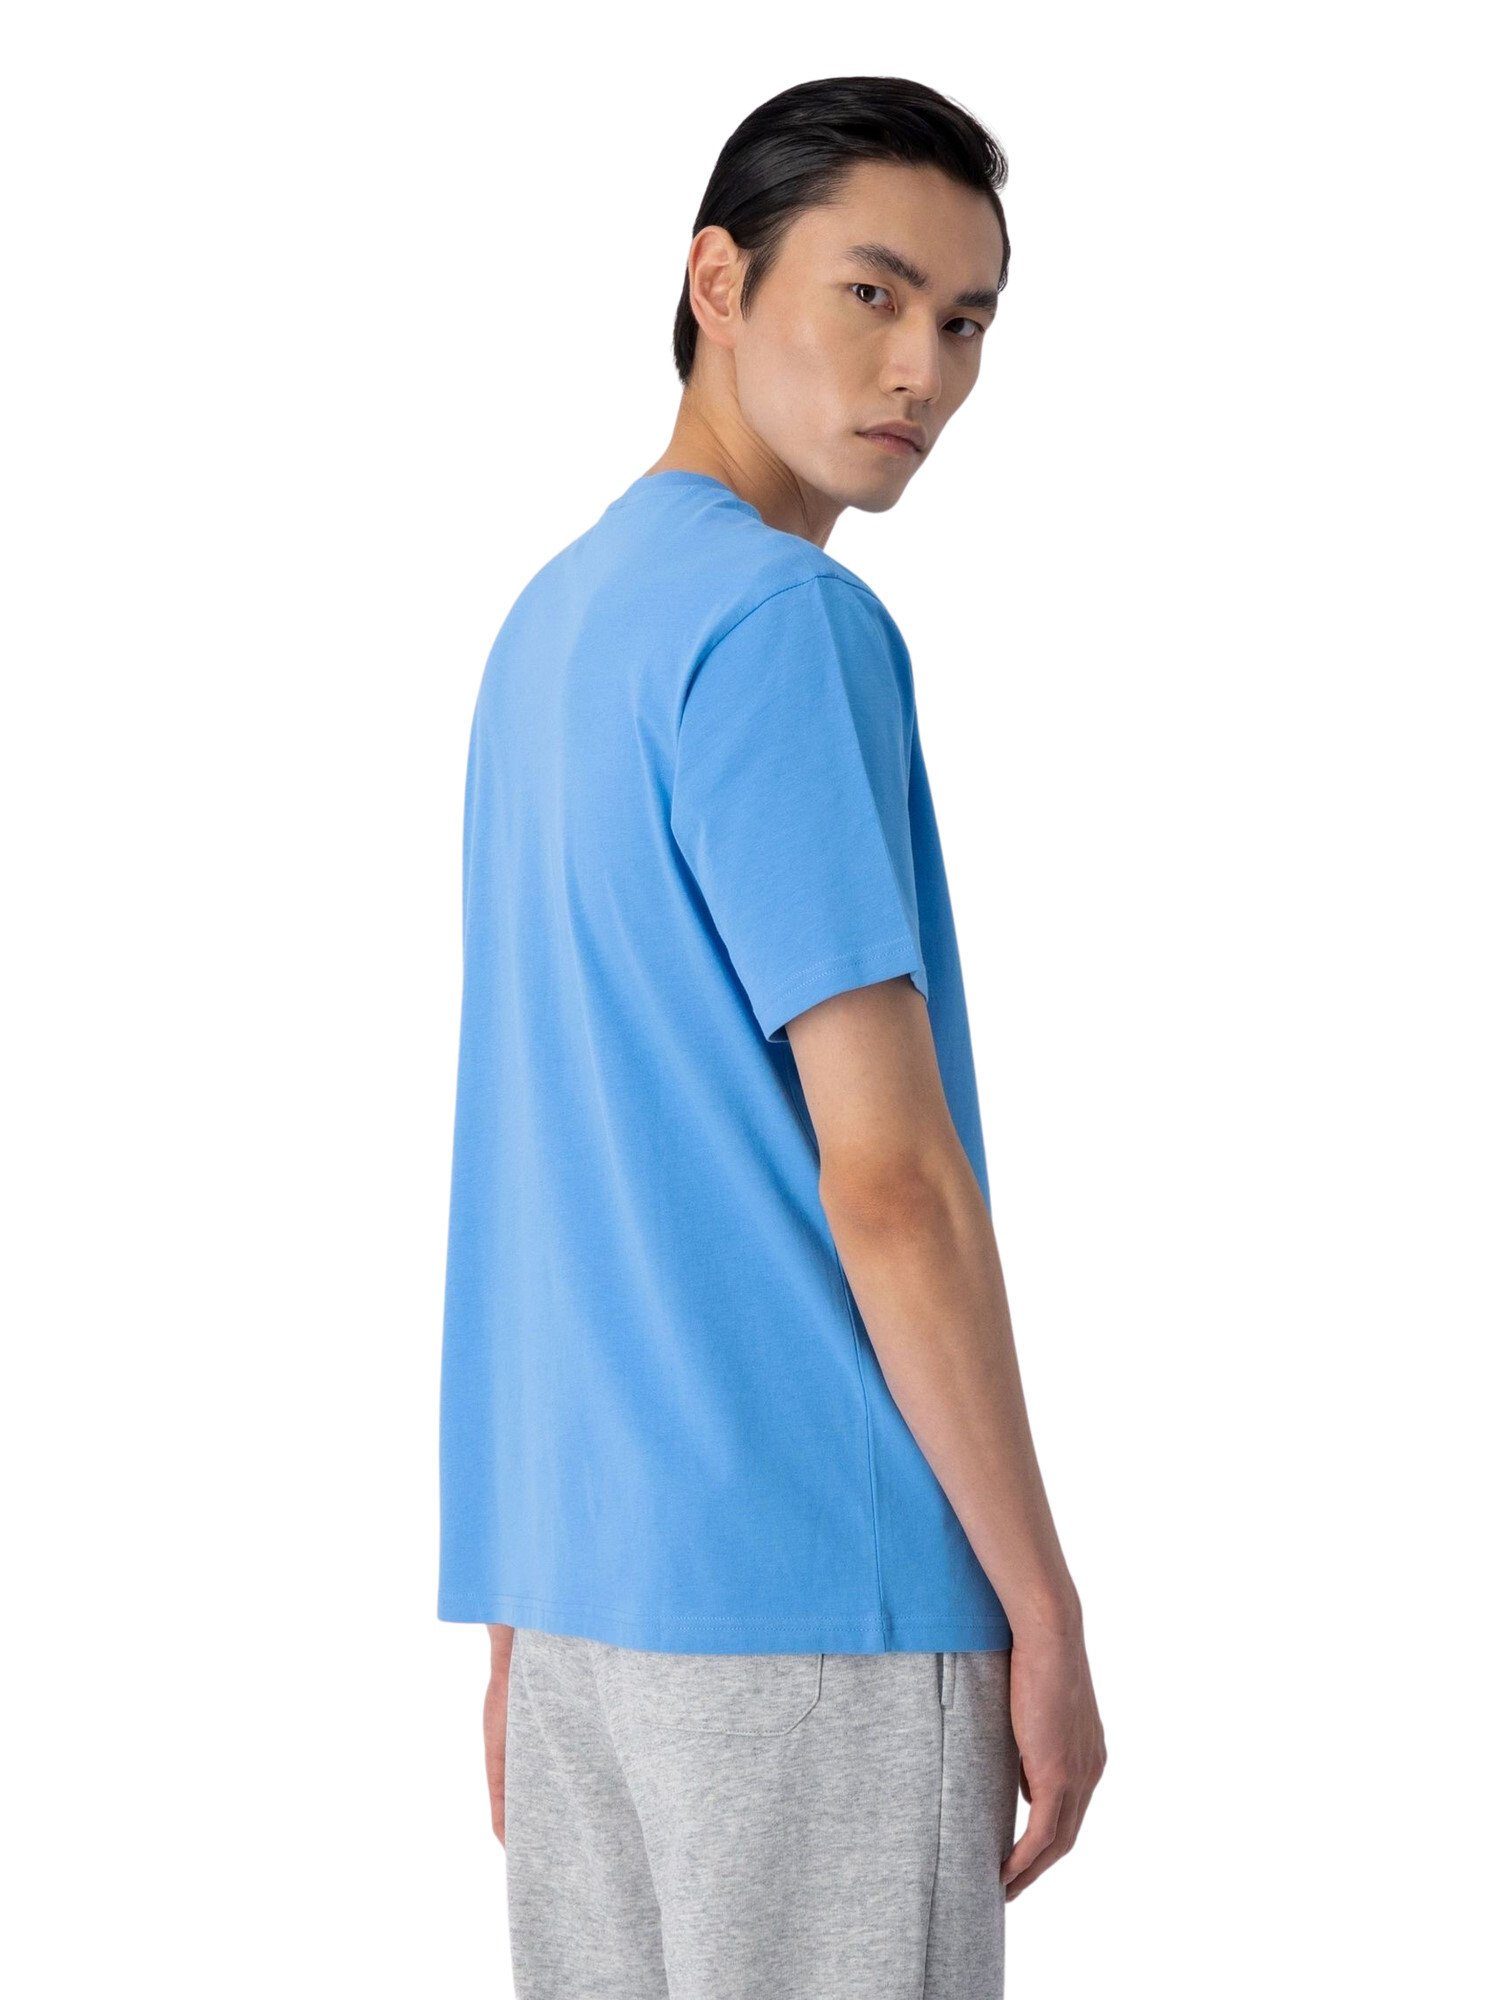 Champion Shirt T-Shirt mit Baumwolle aus hellblau Rundhals-T-Shirt